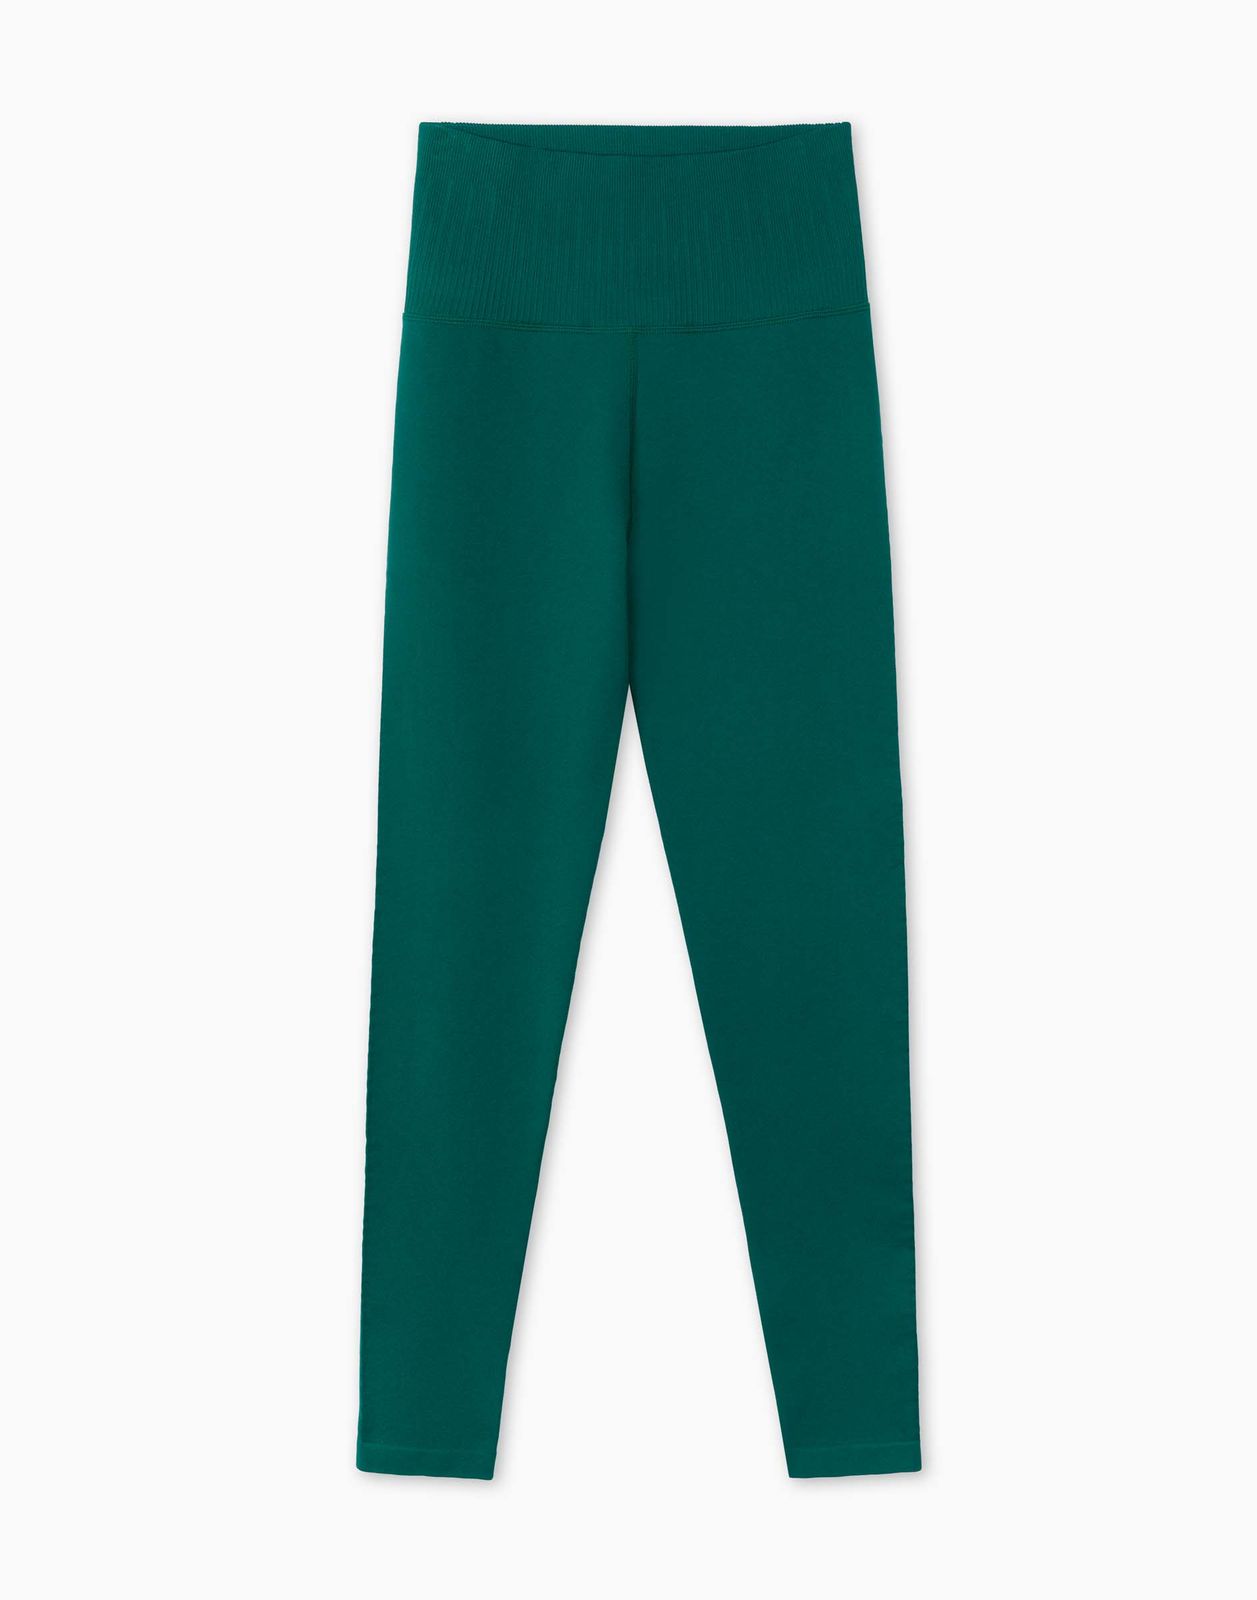 Спортивные леггинсы женские Gloria Jeans GRT000422 зеленые XS/164 (38-40)